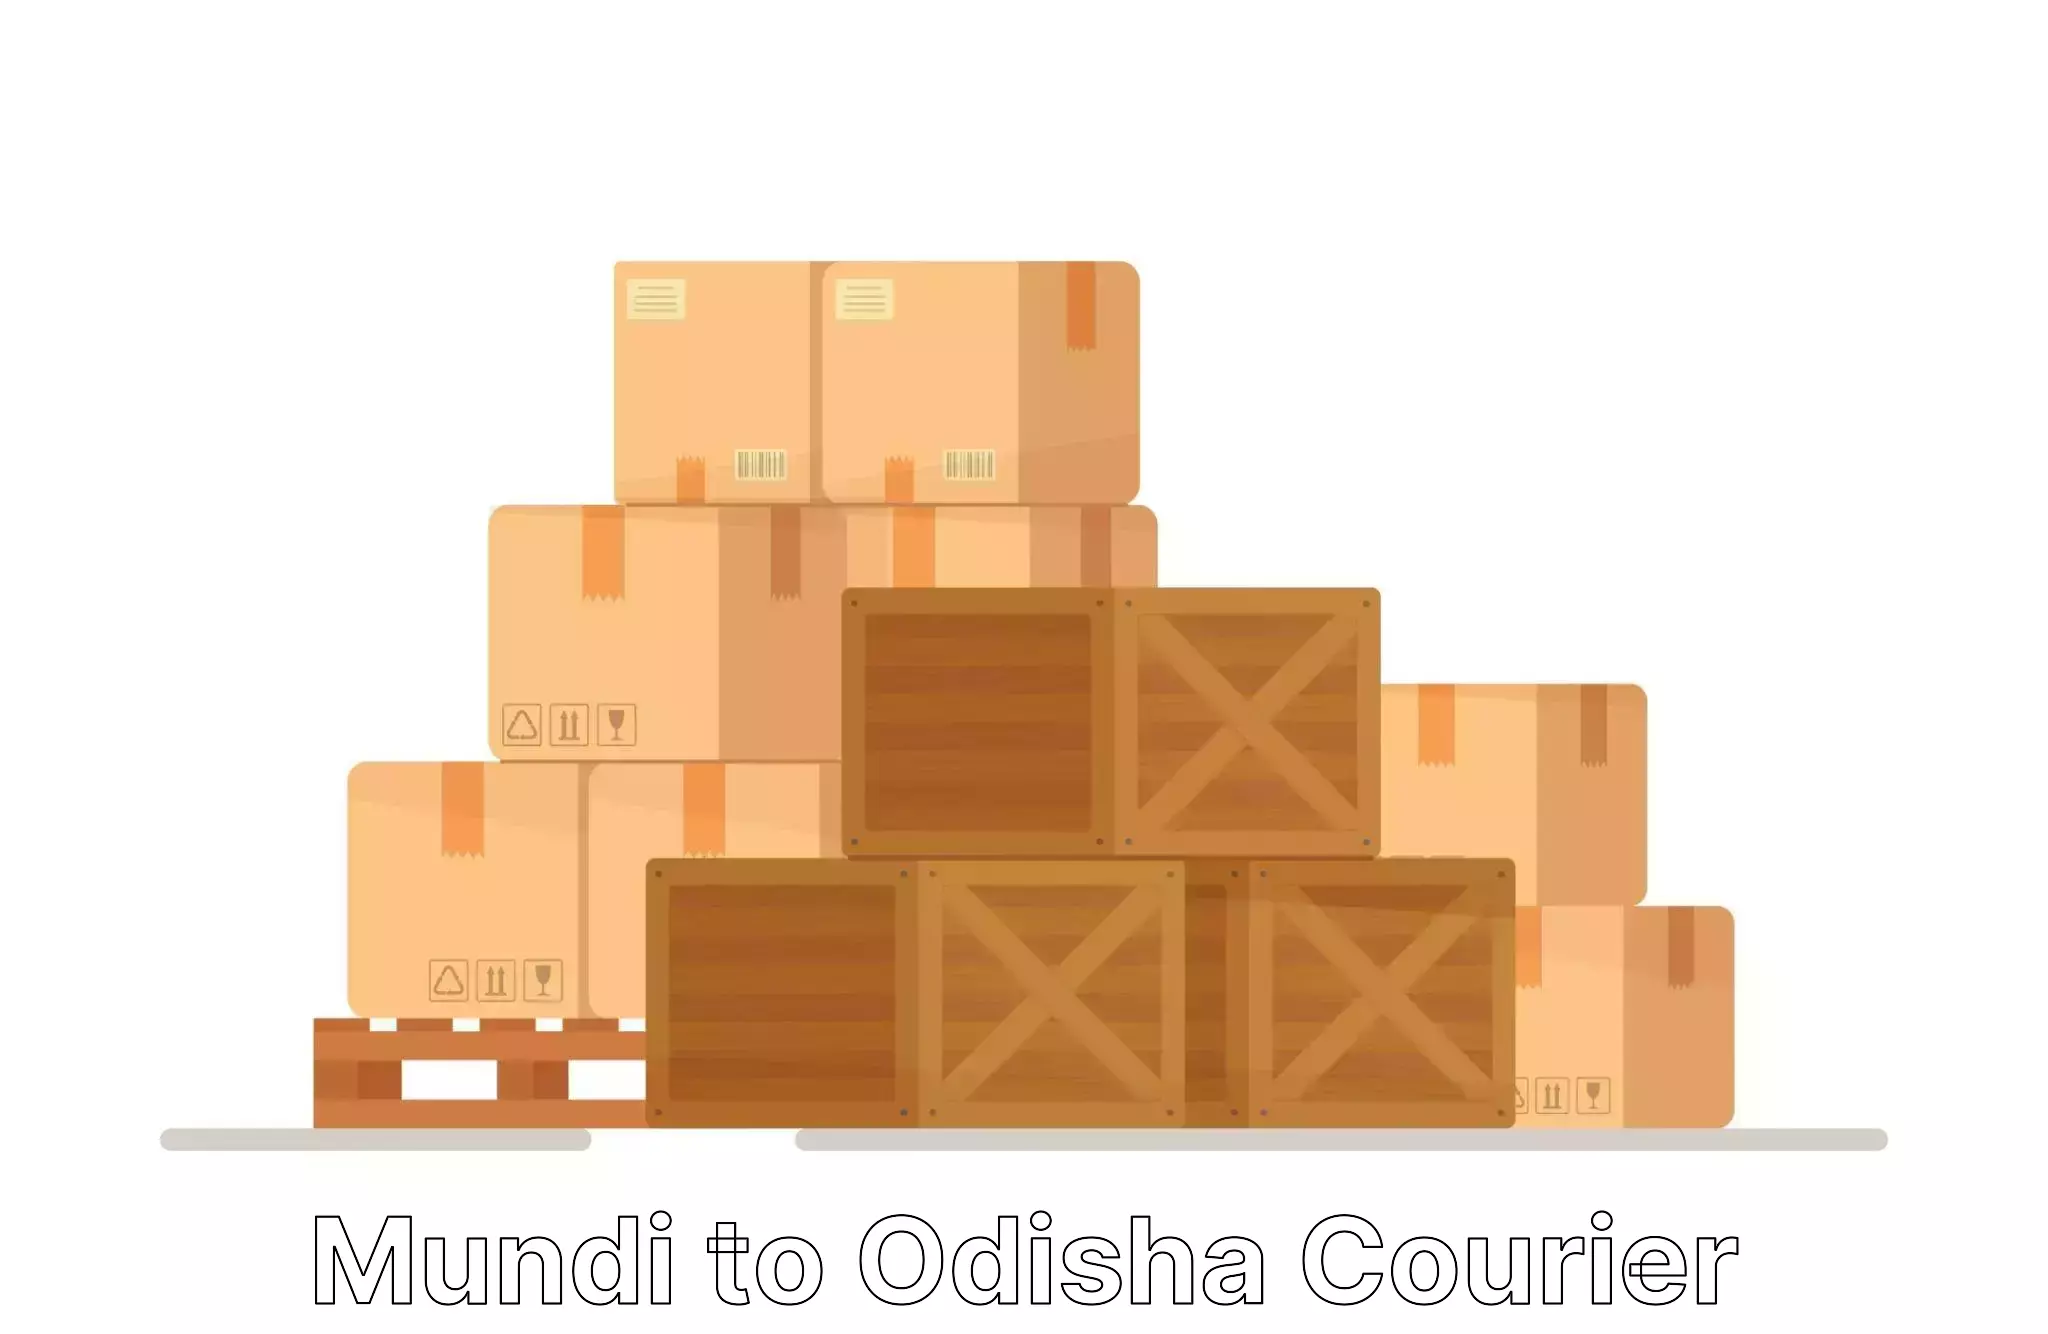 Furniture transport and storage in Mundi to Bamra